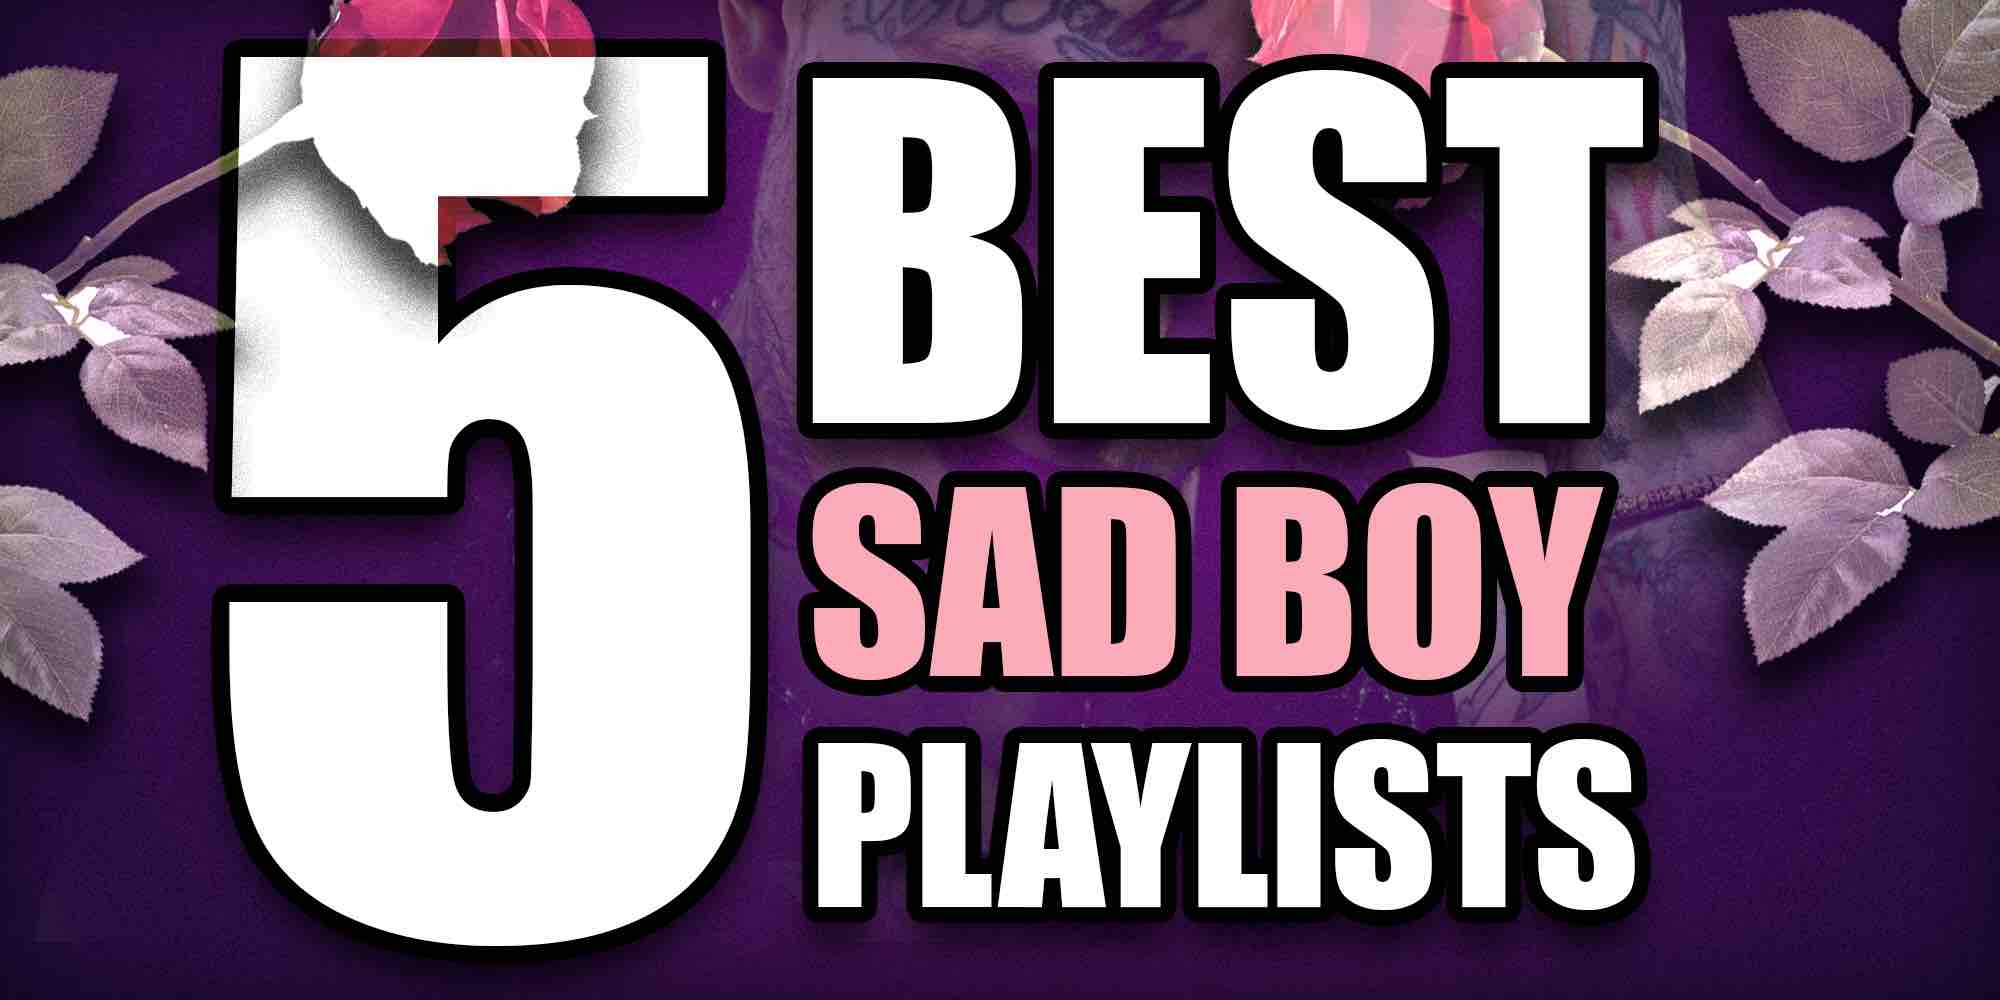 5 Best sad boy playlists